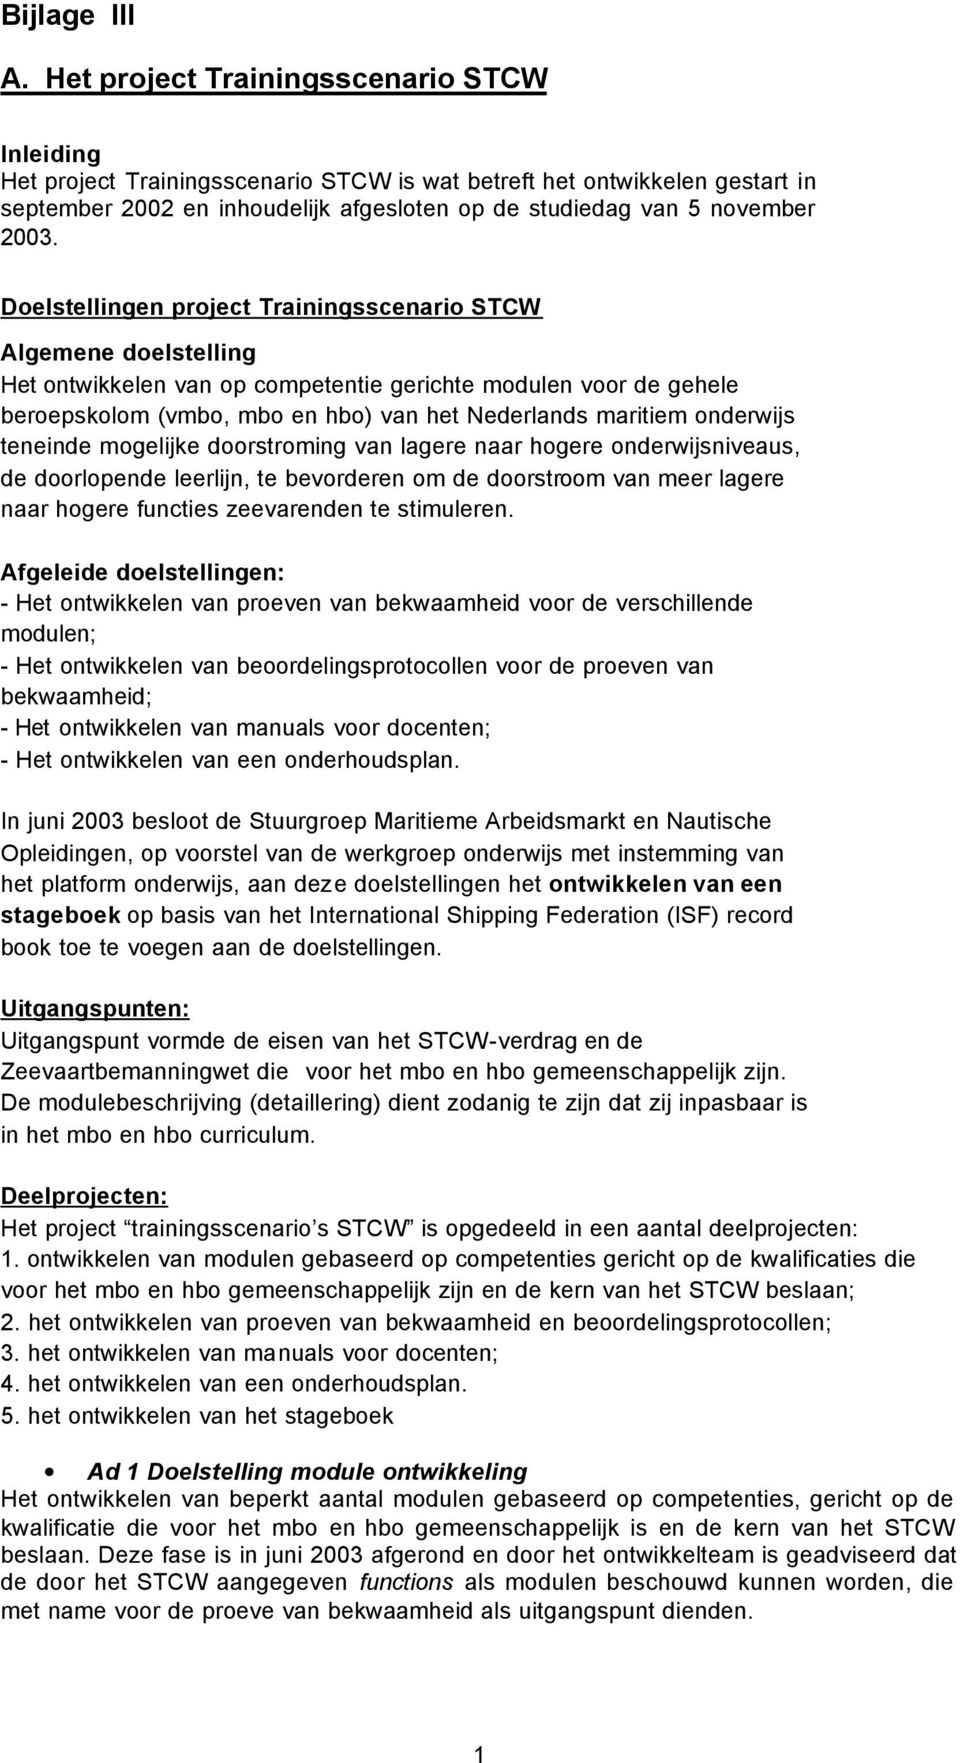 Doelstellingen project Trainingsscenario STCW Algemene doelstelling Het ontwikkelen van op competentie gerichte modulen voor de gehele beroepskolom (vmbo, mbo en hbo) van het Nederlands maritiem